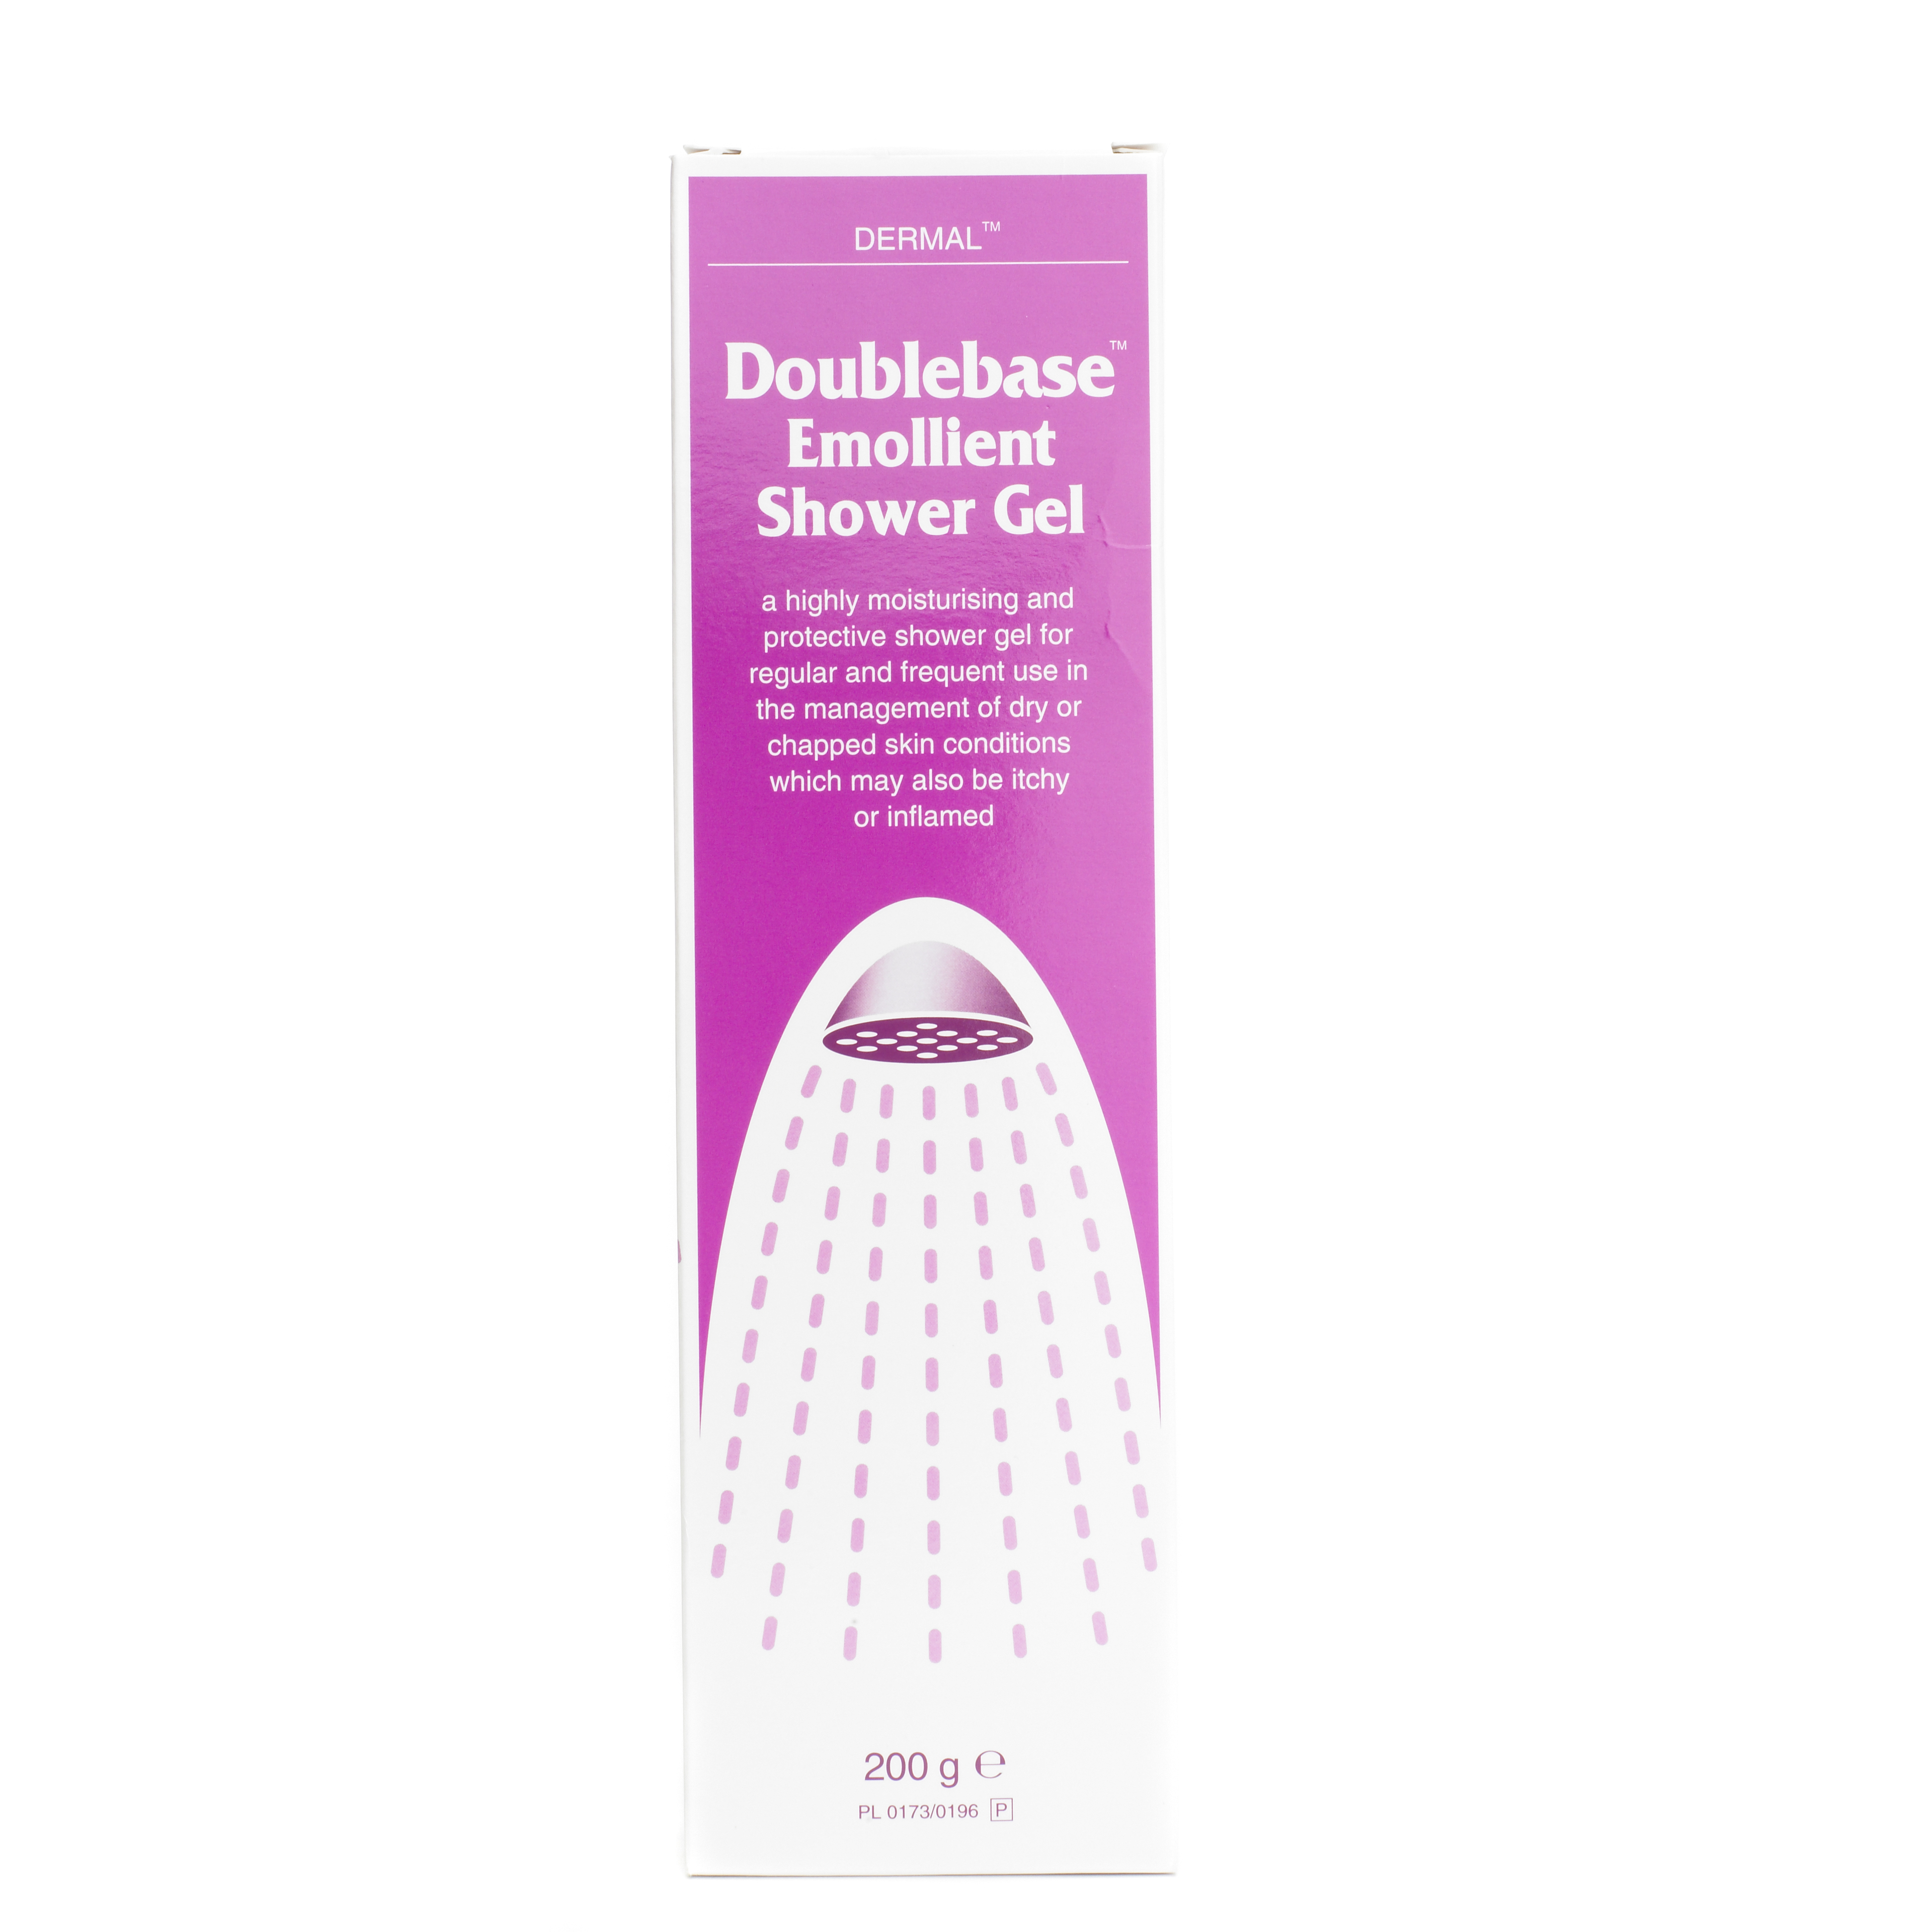 Unbranded Doublebase Emollient Shower Gel